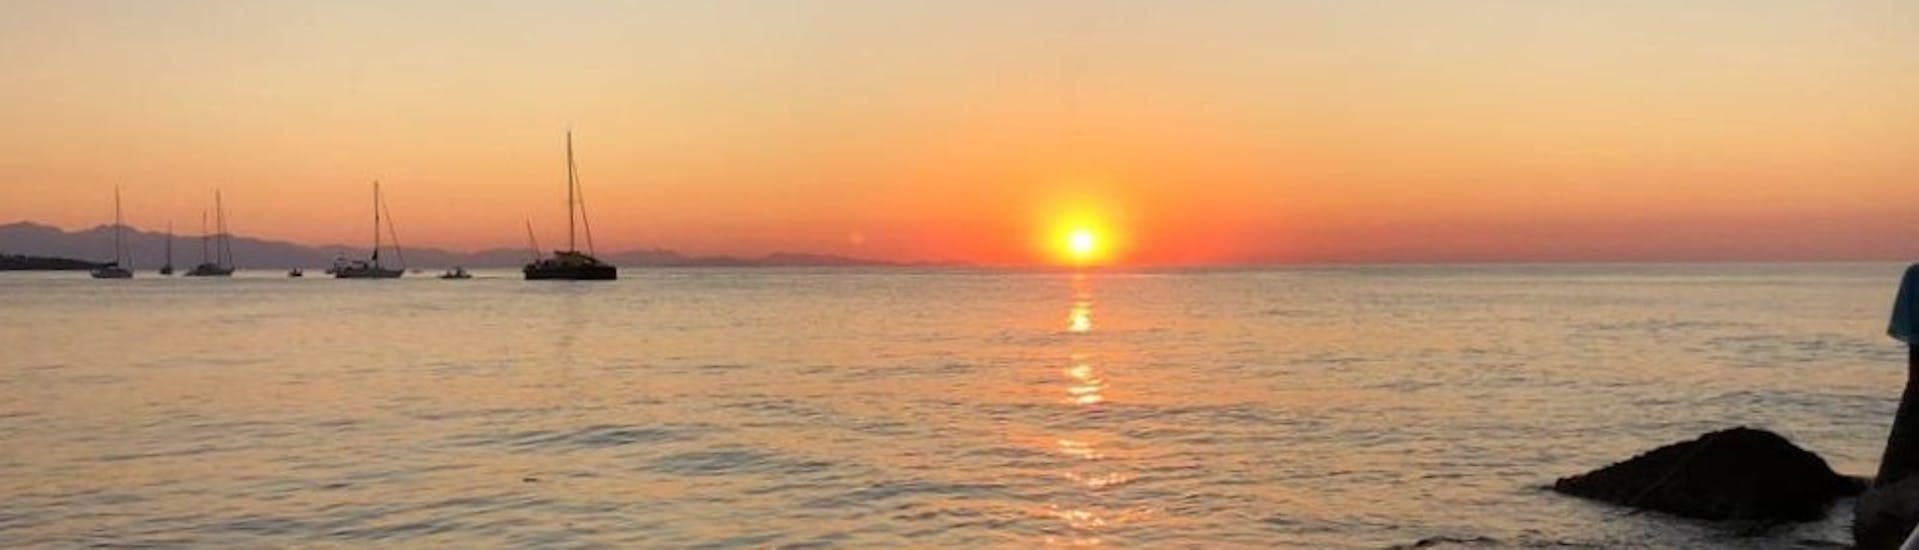 Foto des Sonnenuntergangs gemacht während der Private Bootstour um Cefalù mit Schnorcheln und Aperitif bei Sonnenuntergang.